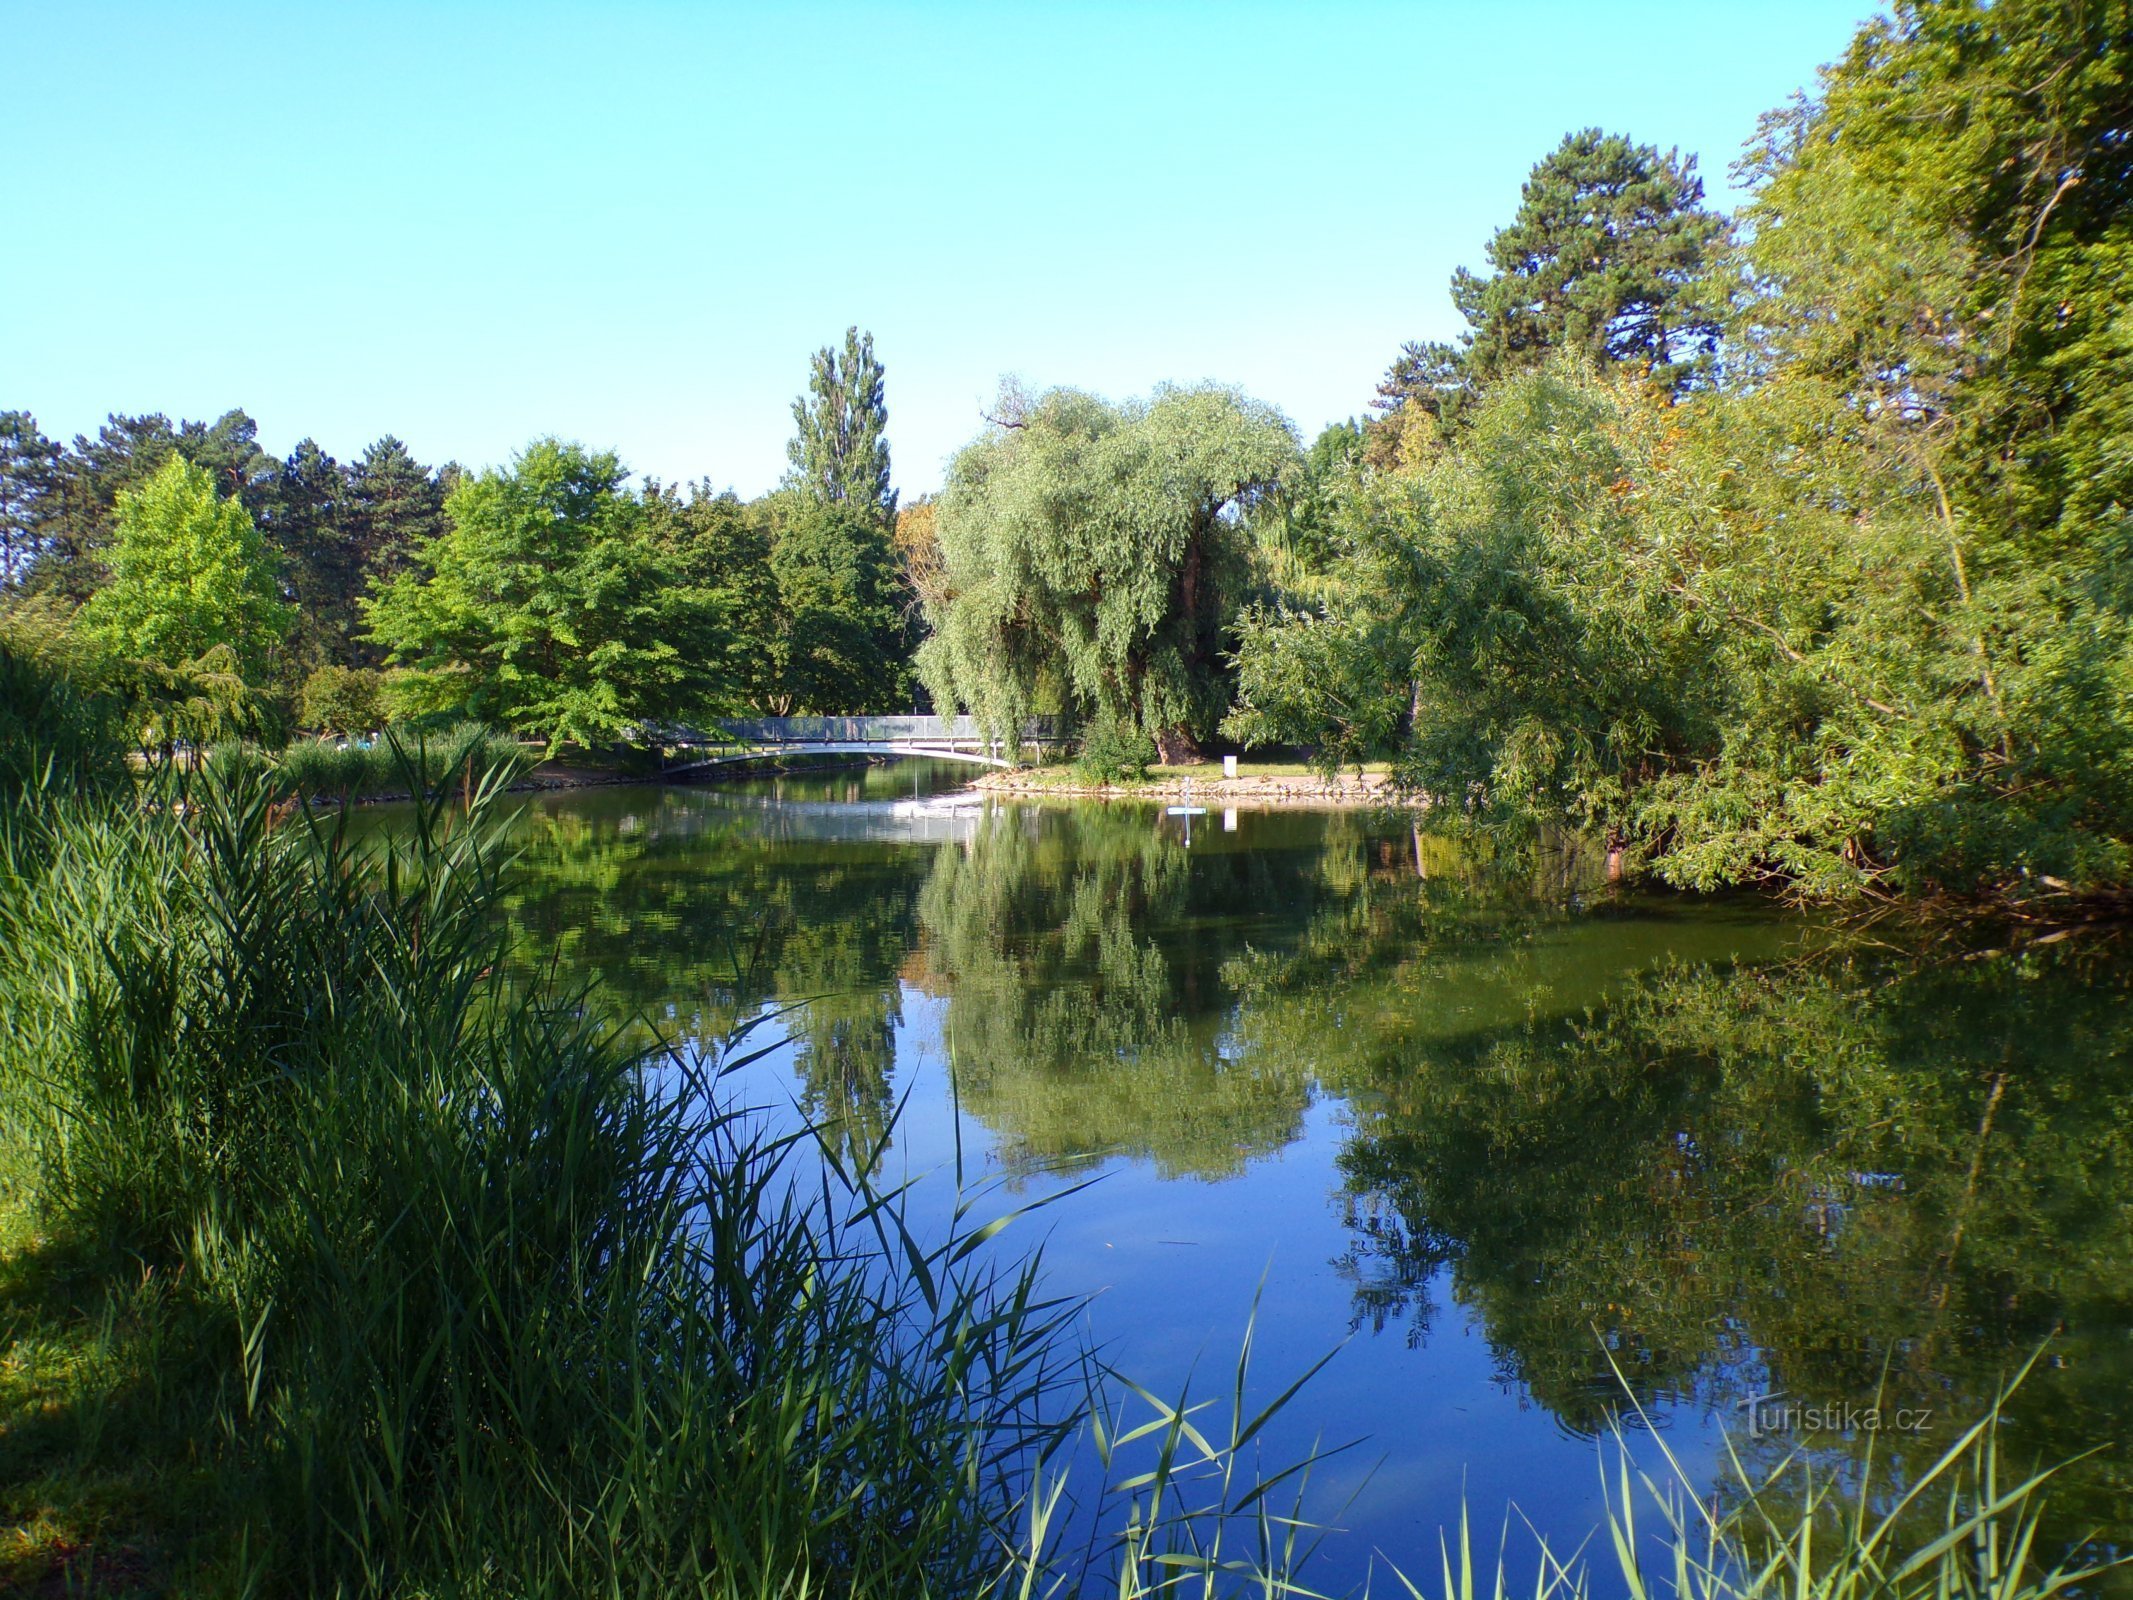 Lagoa em Šimkovy Sady (Hradec Králové, 24.7.2022/XNUMX/XNUMX)